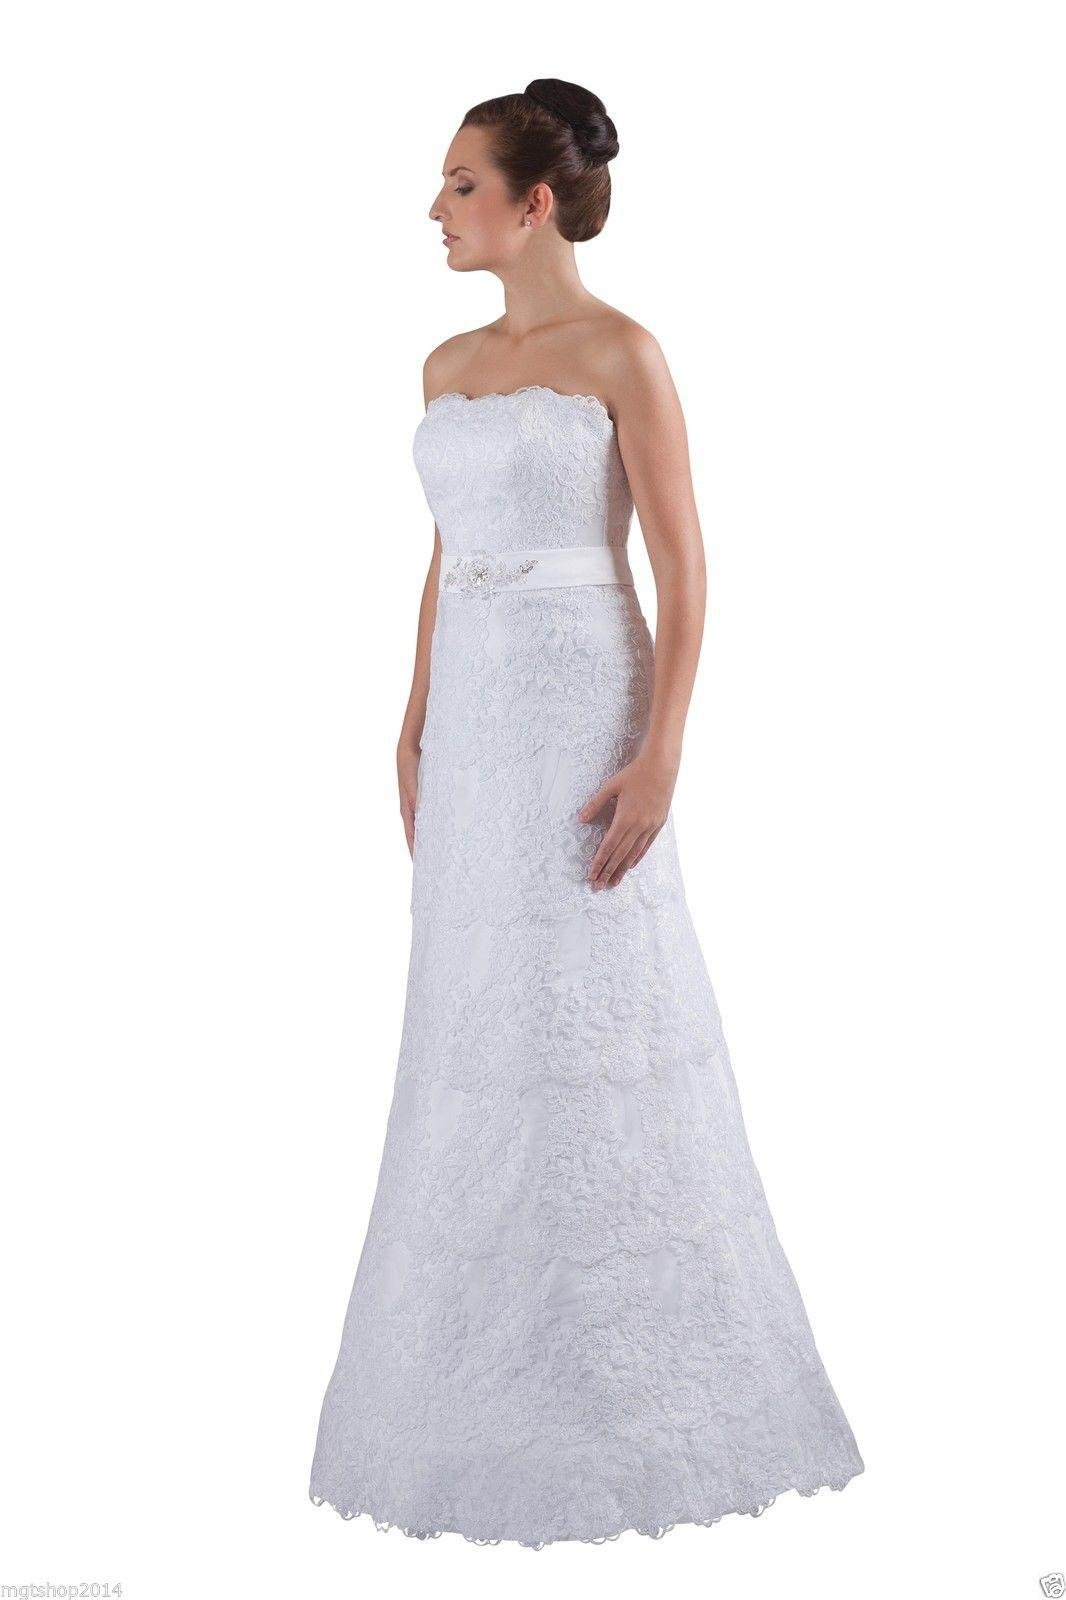 15 Einzigartig Brautkleid Abendkleid Vertrieb13 Schön Brautkleid Abendkleid Design